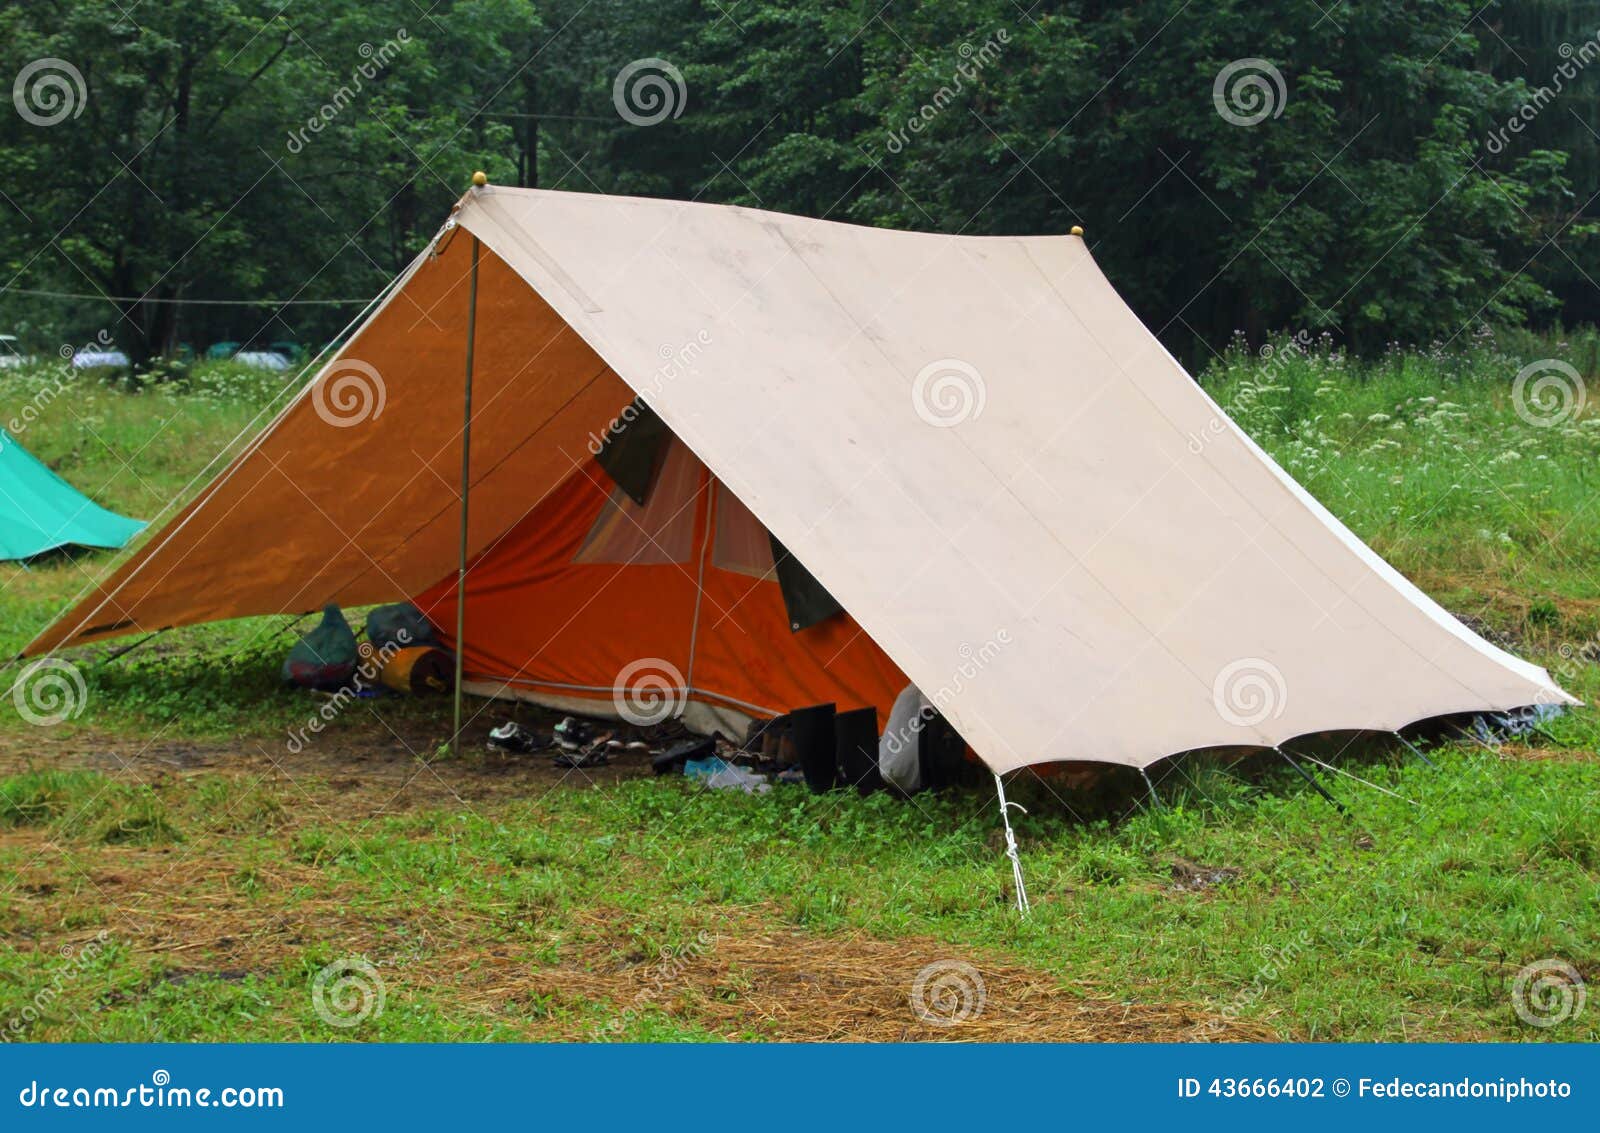 La Tenda Di Campeggio In Un Esploratore Si Accampa Sul Prato Inglese Fotografia Stock Immagine Di Guida